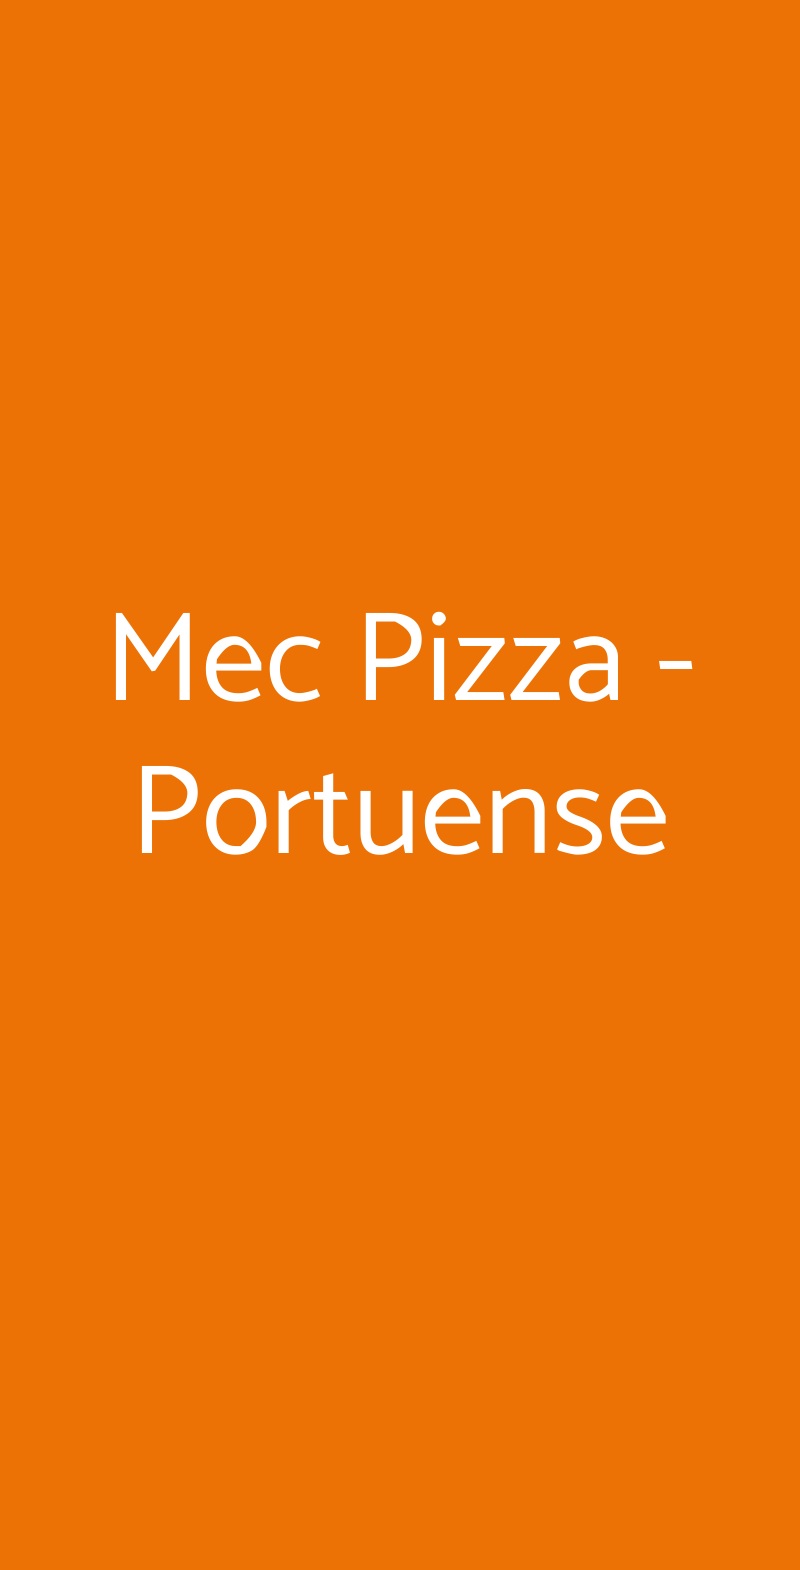 Mec Pizza - Portuense Roma menù 1 pagina